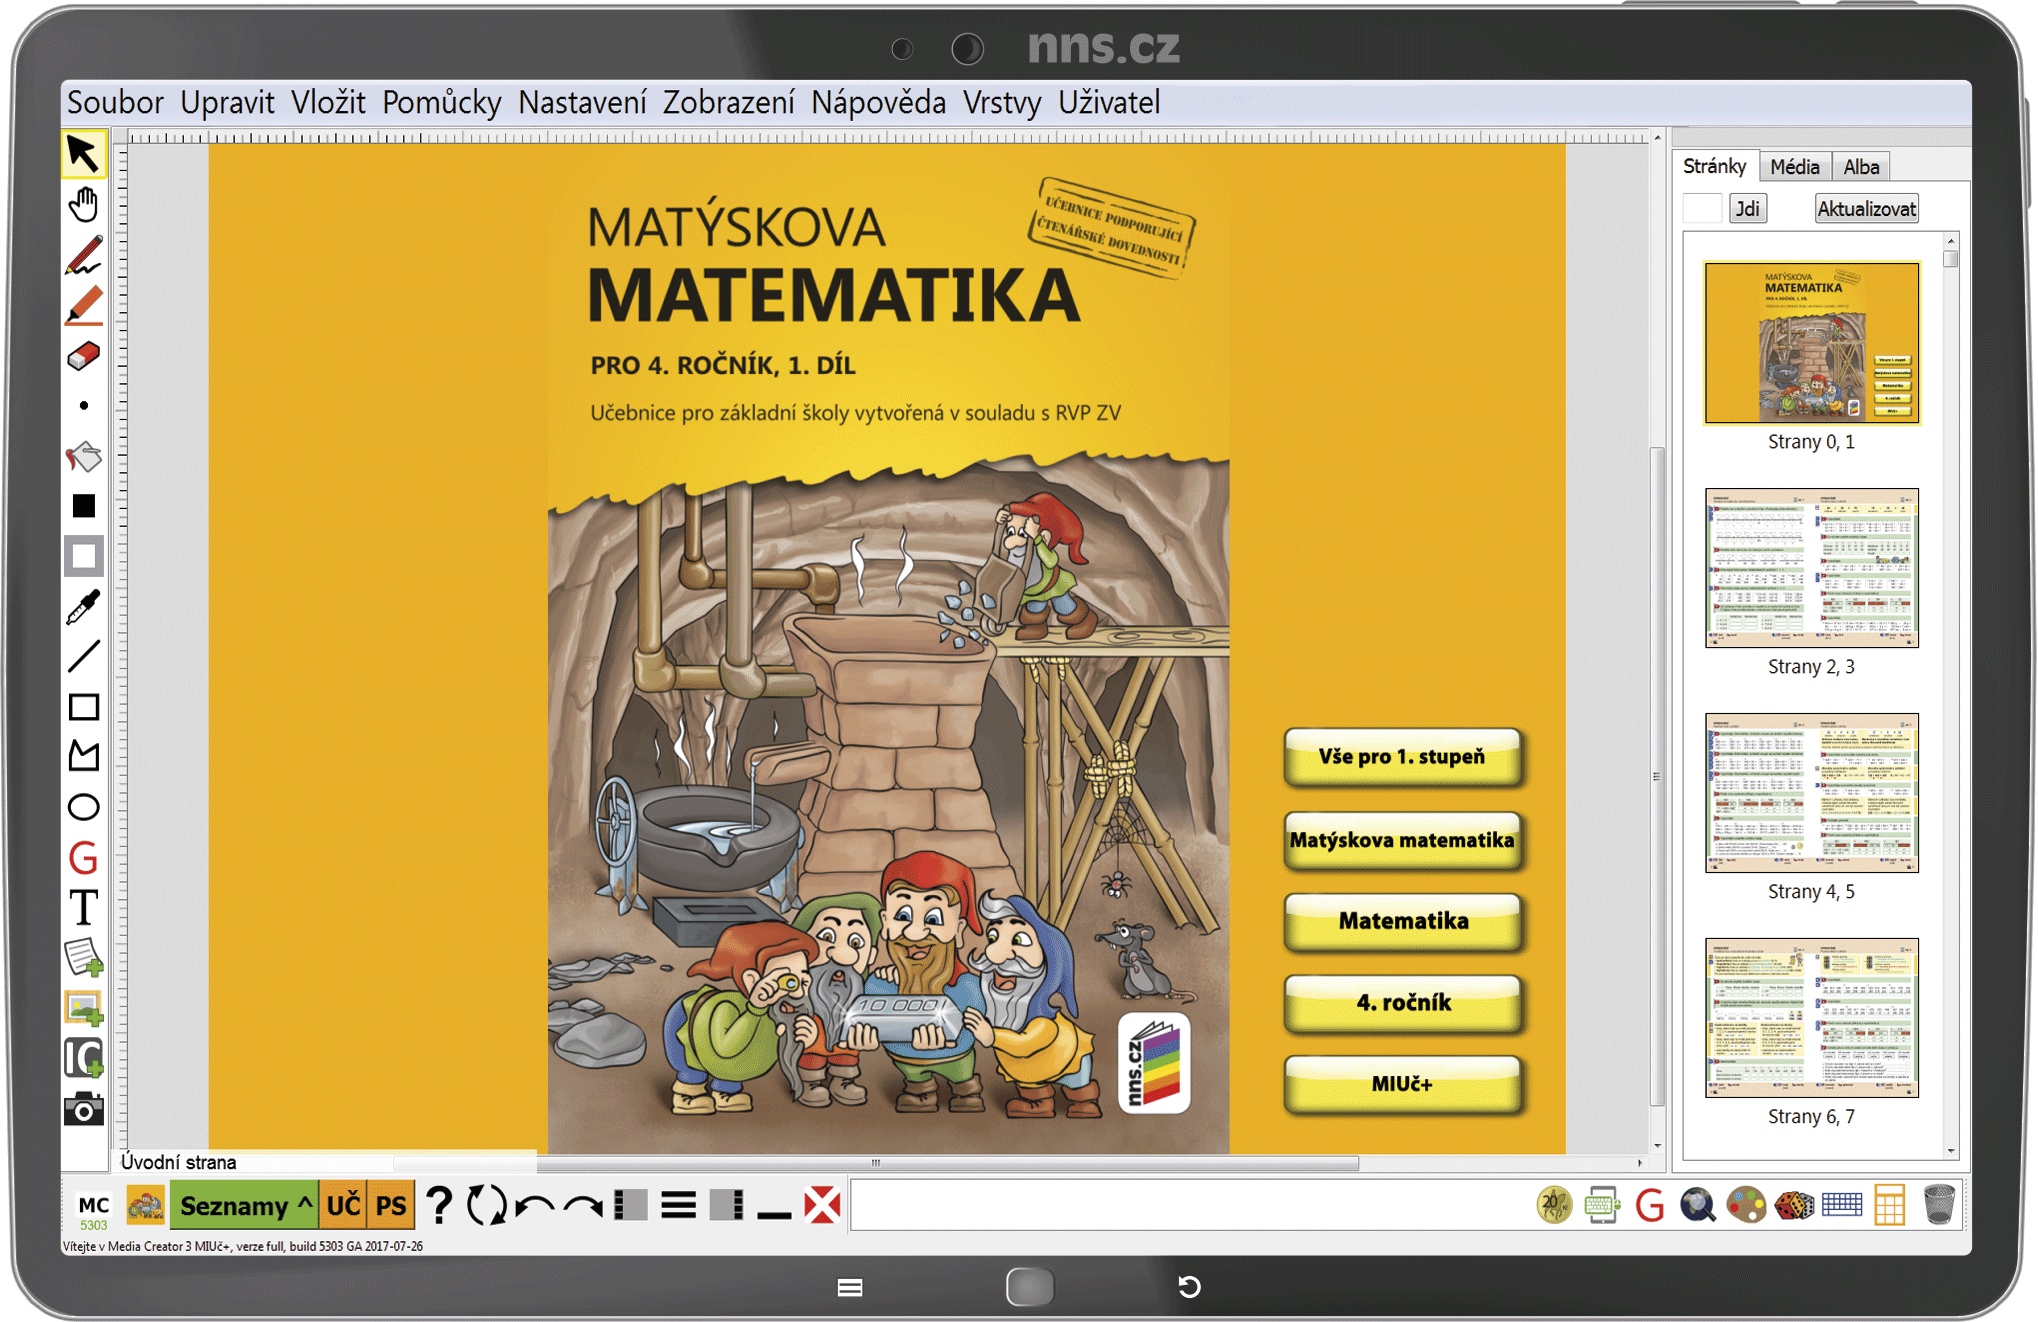 MIUč+ Matýskova matematika, 4. ročník 1., 2. díl a Geometrie – školní licence pro 1 učitele na 1